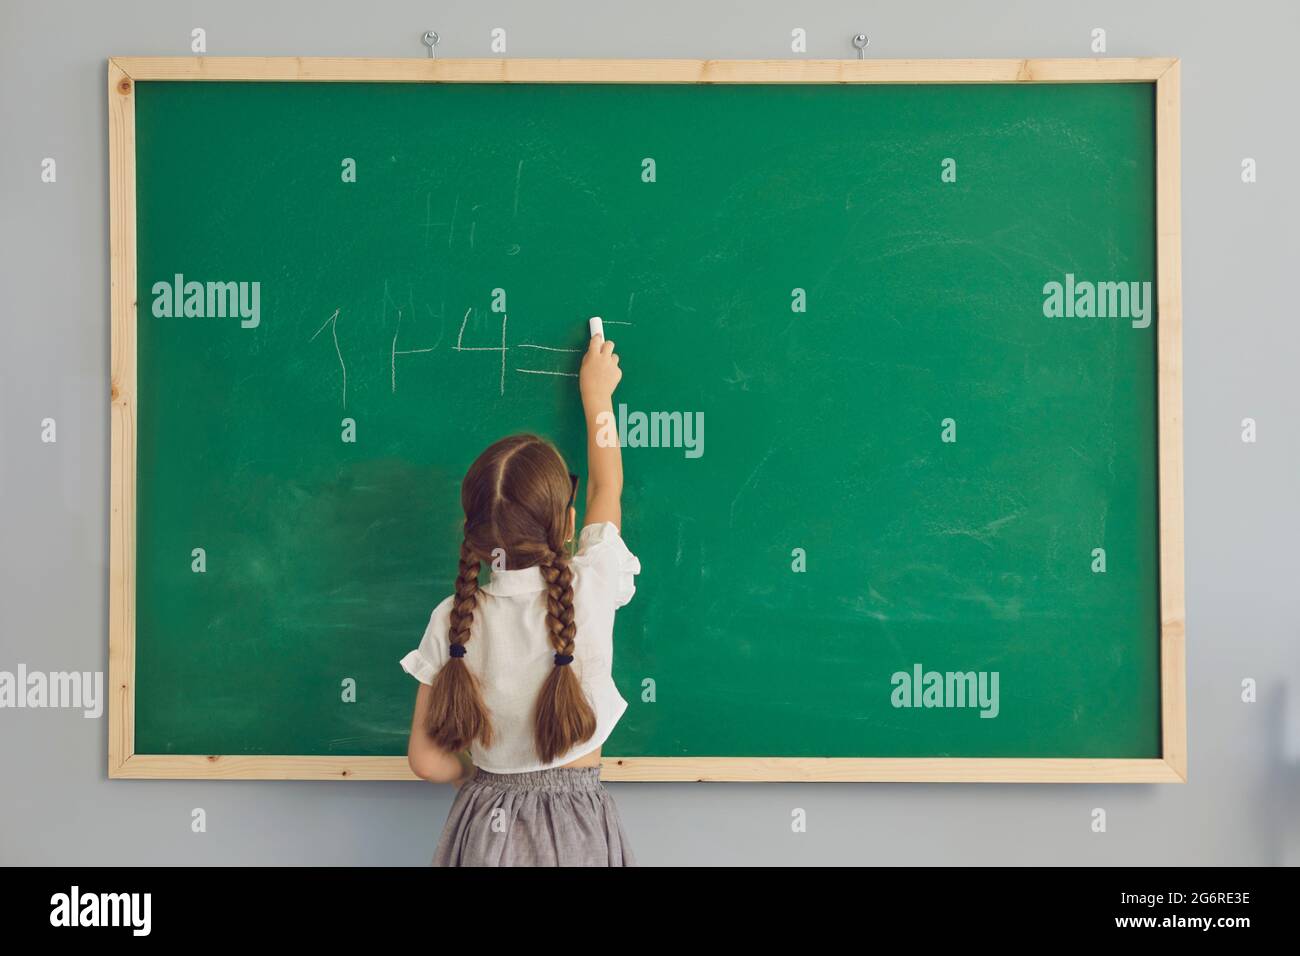 Vue arrière de la petite fille étudiante écrivant vers le bas somme arithmétique vert école tableau de surveillance Banque D'Images